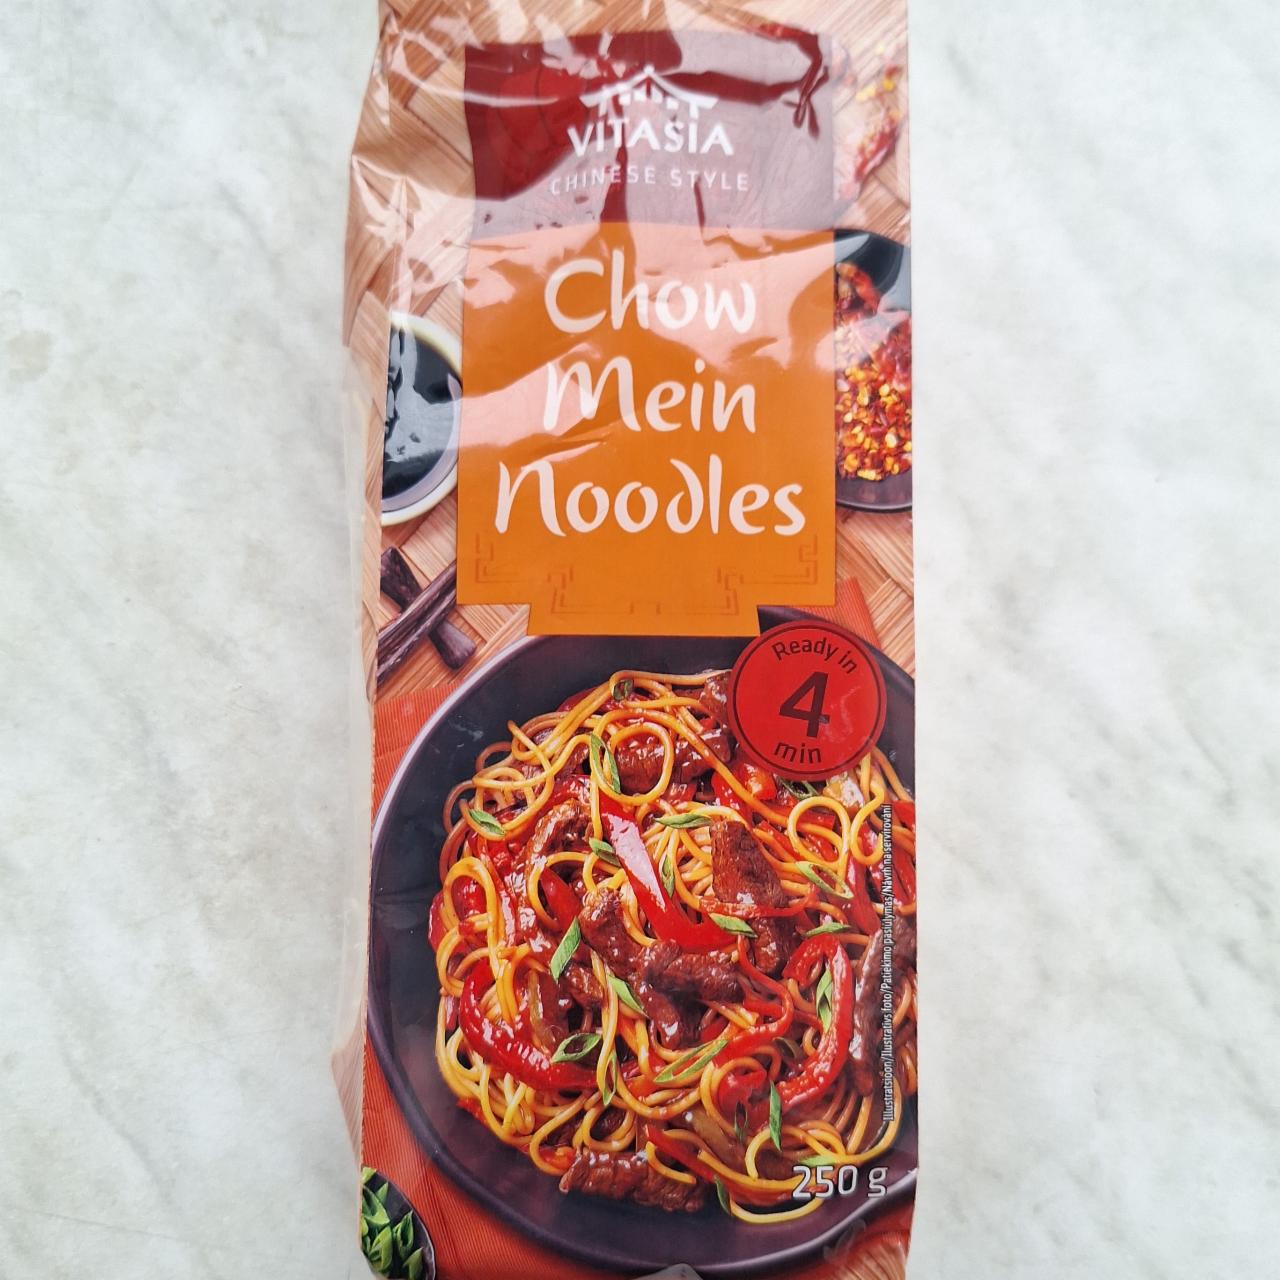 Fotografie - Chow Mein Noodles Vitasia